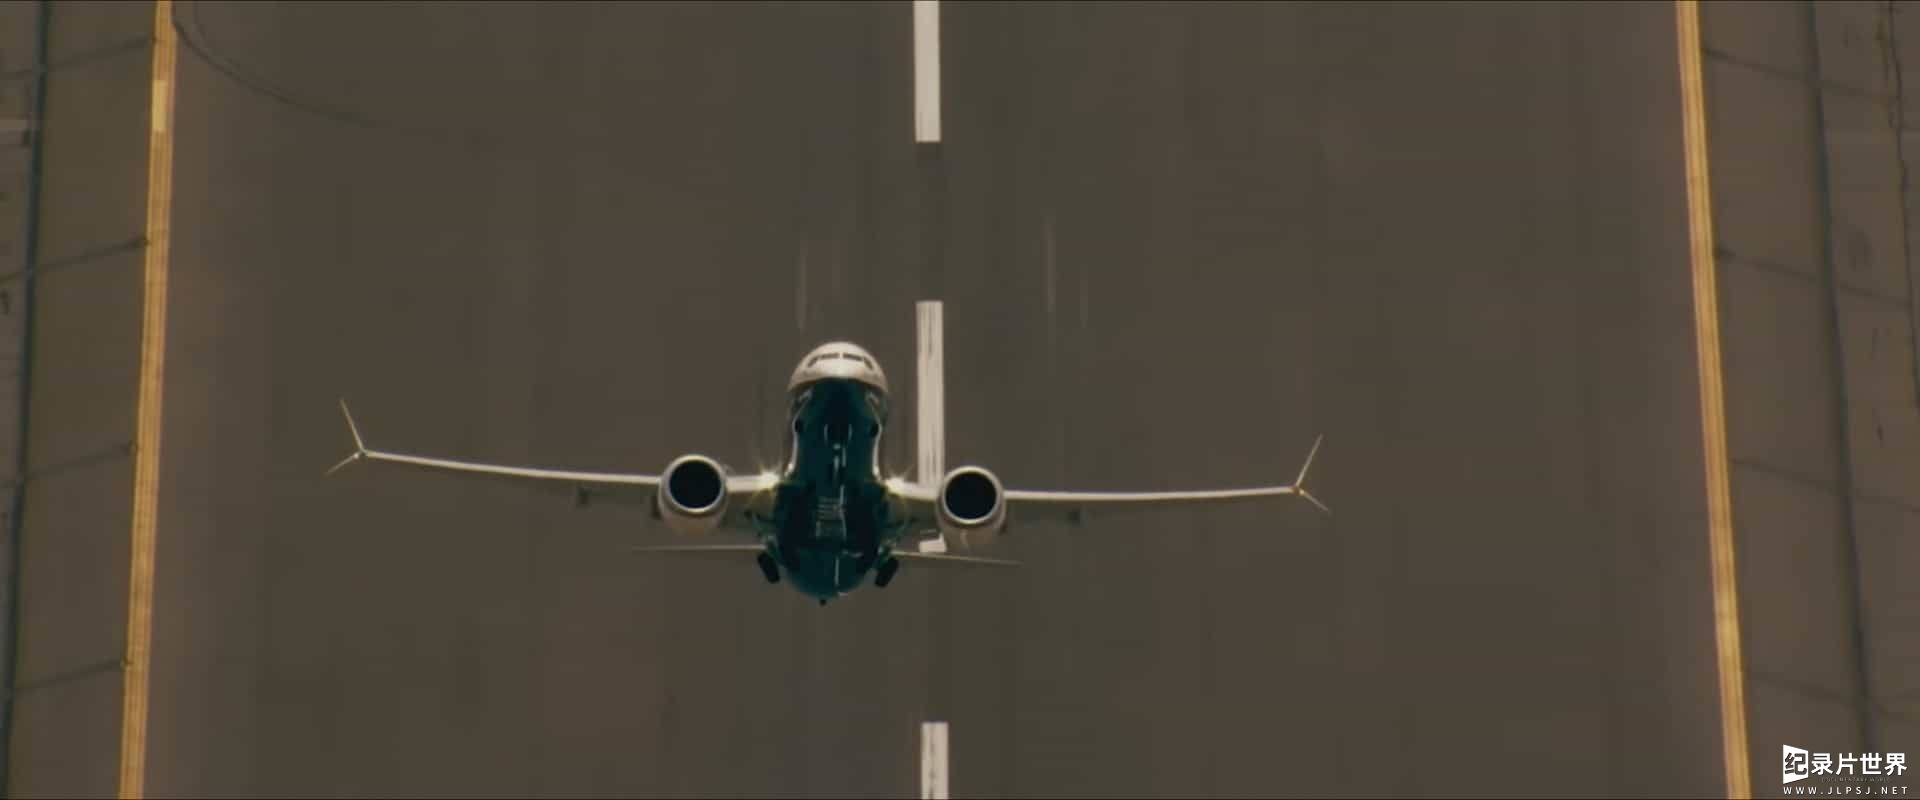 Amazon纪录片《Flight/Risk 生死航班 2022》全1集